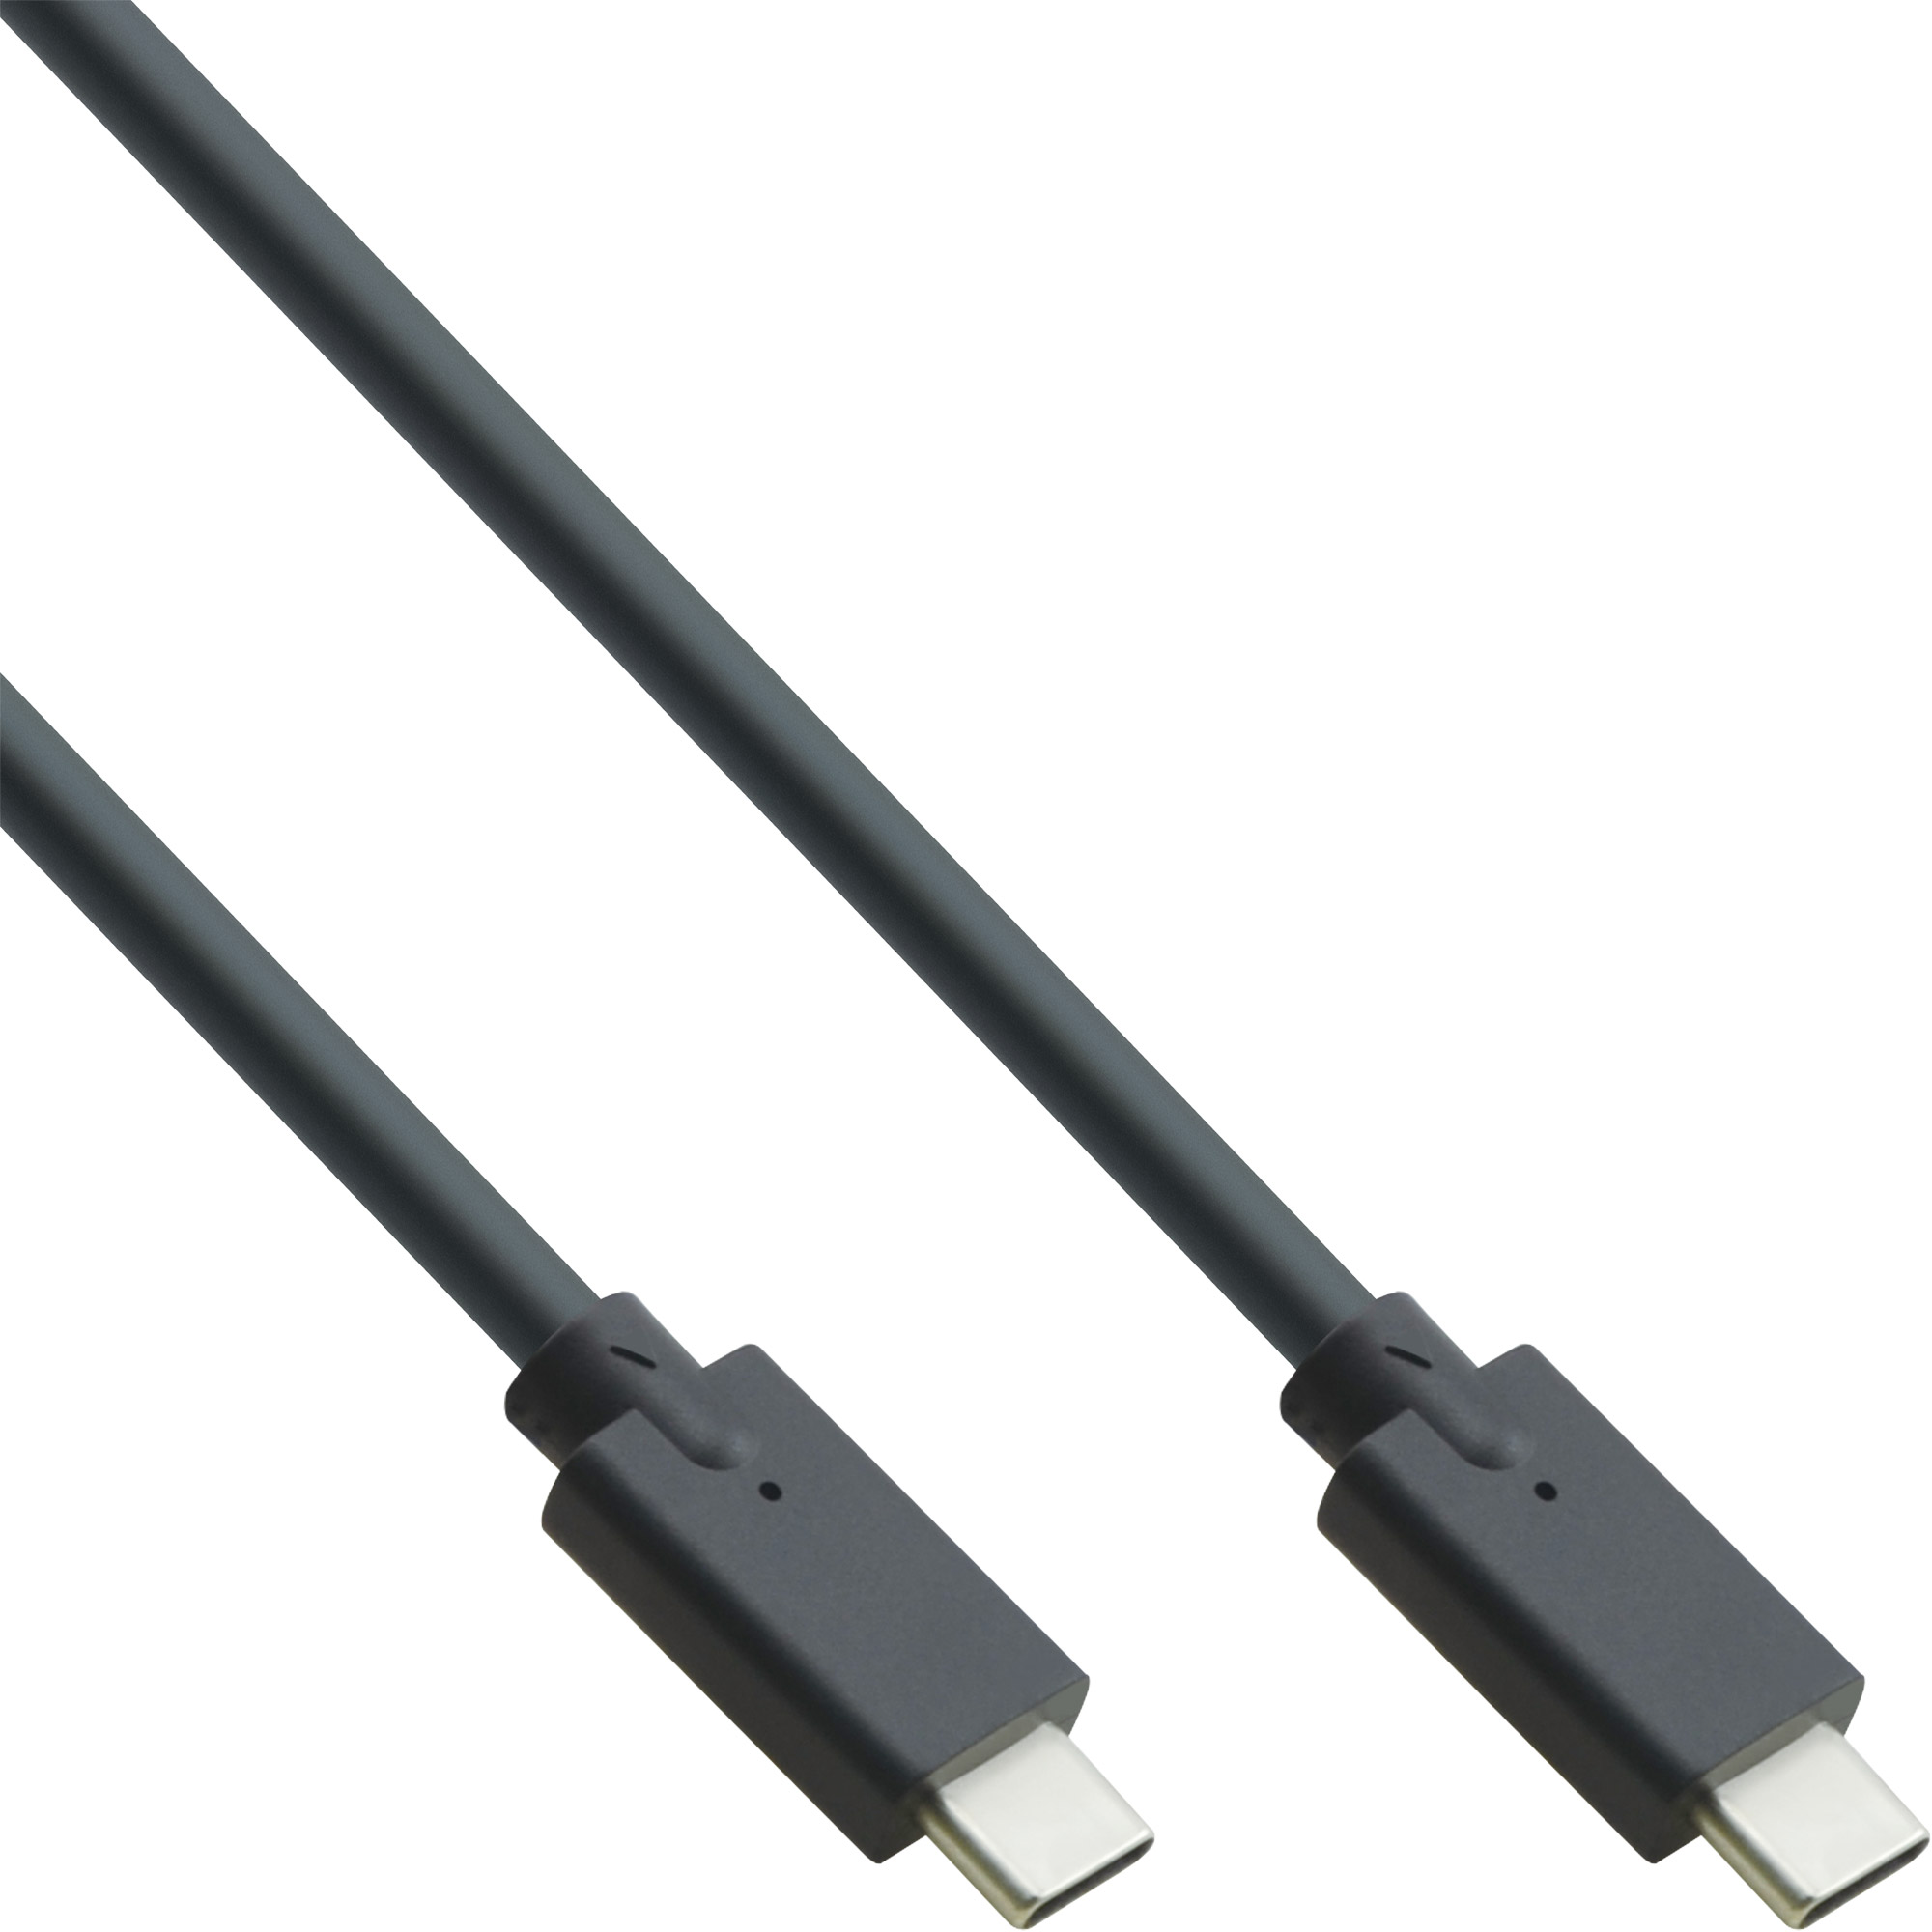 InLine® USB 3.2 Gen.2 Kabel, USB Typ-C Stecker/Stecker, schwarz, 1m